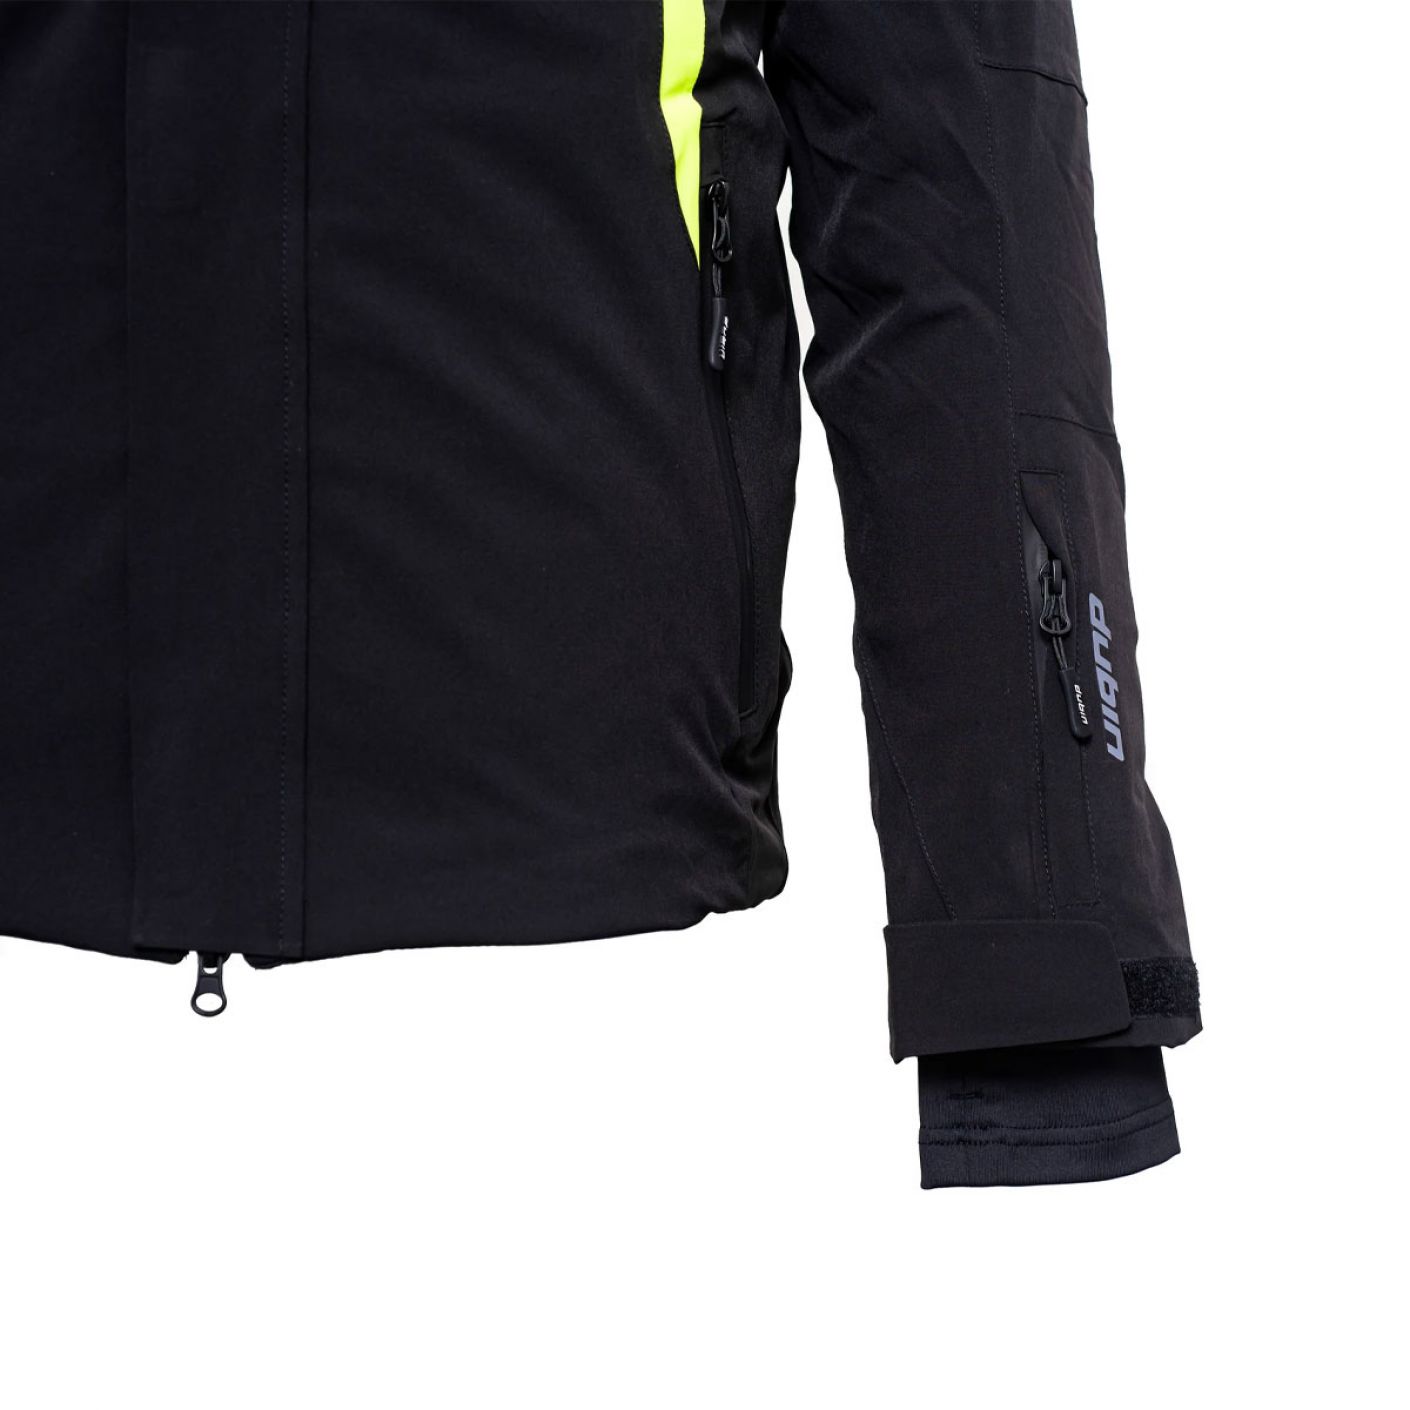 Dubin Atlantis Ski Jacket Black-Lime Green for Men